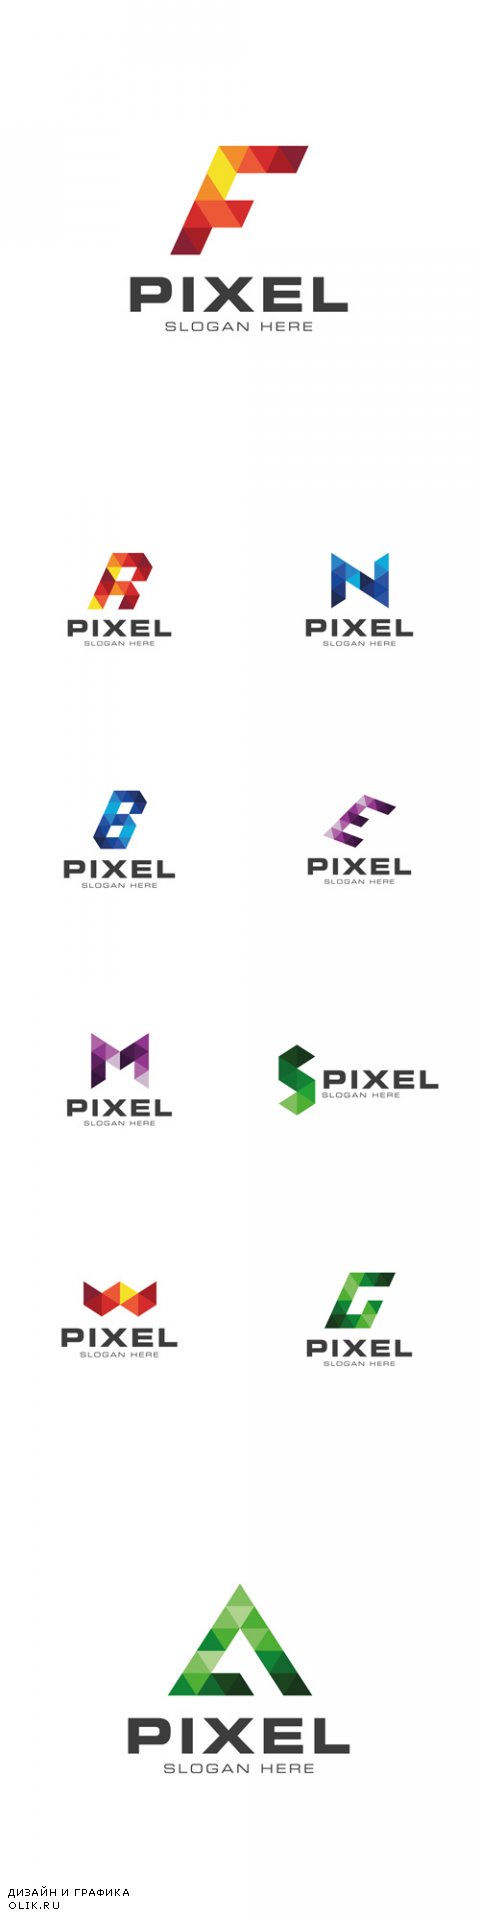 Vector Modern Pixelated Logo Template